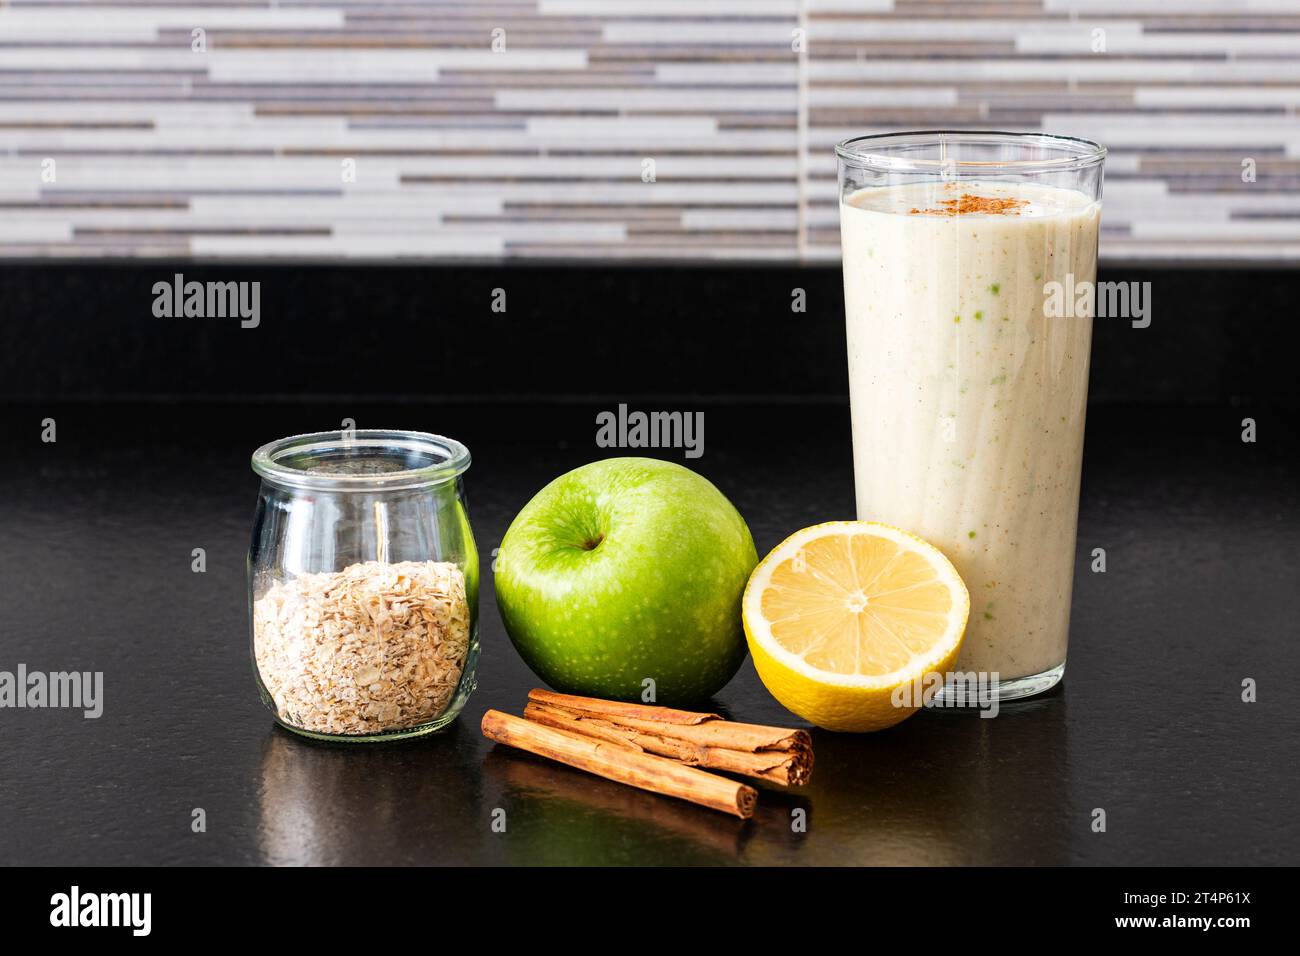 Un verre avec un smoothie maison à côté d'un demi citron, une pomme verte, un pot en verre avec des flocons d'avoine et deux bâtons de cannelle sur un banc de cuisine noir. Banque D'Images